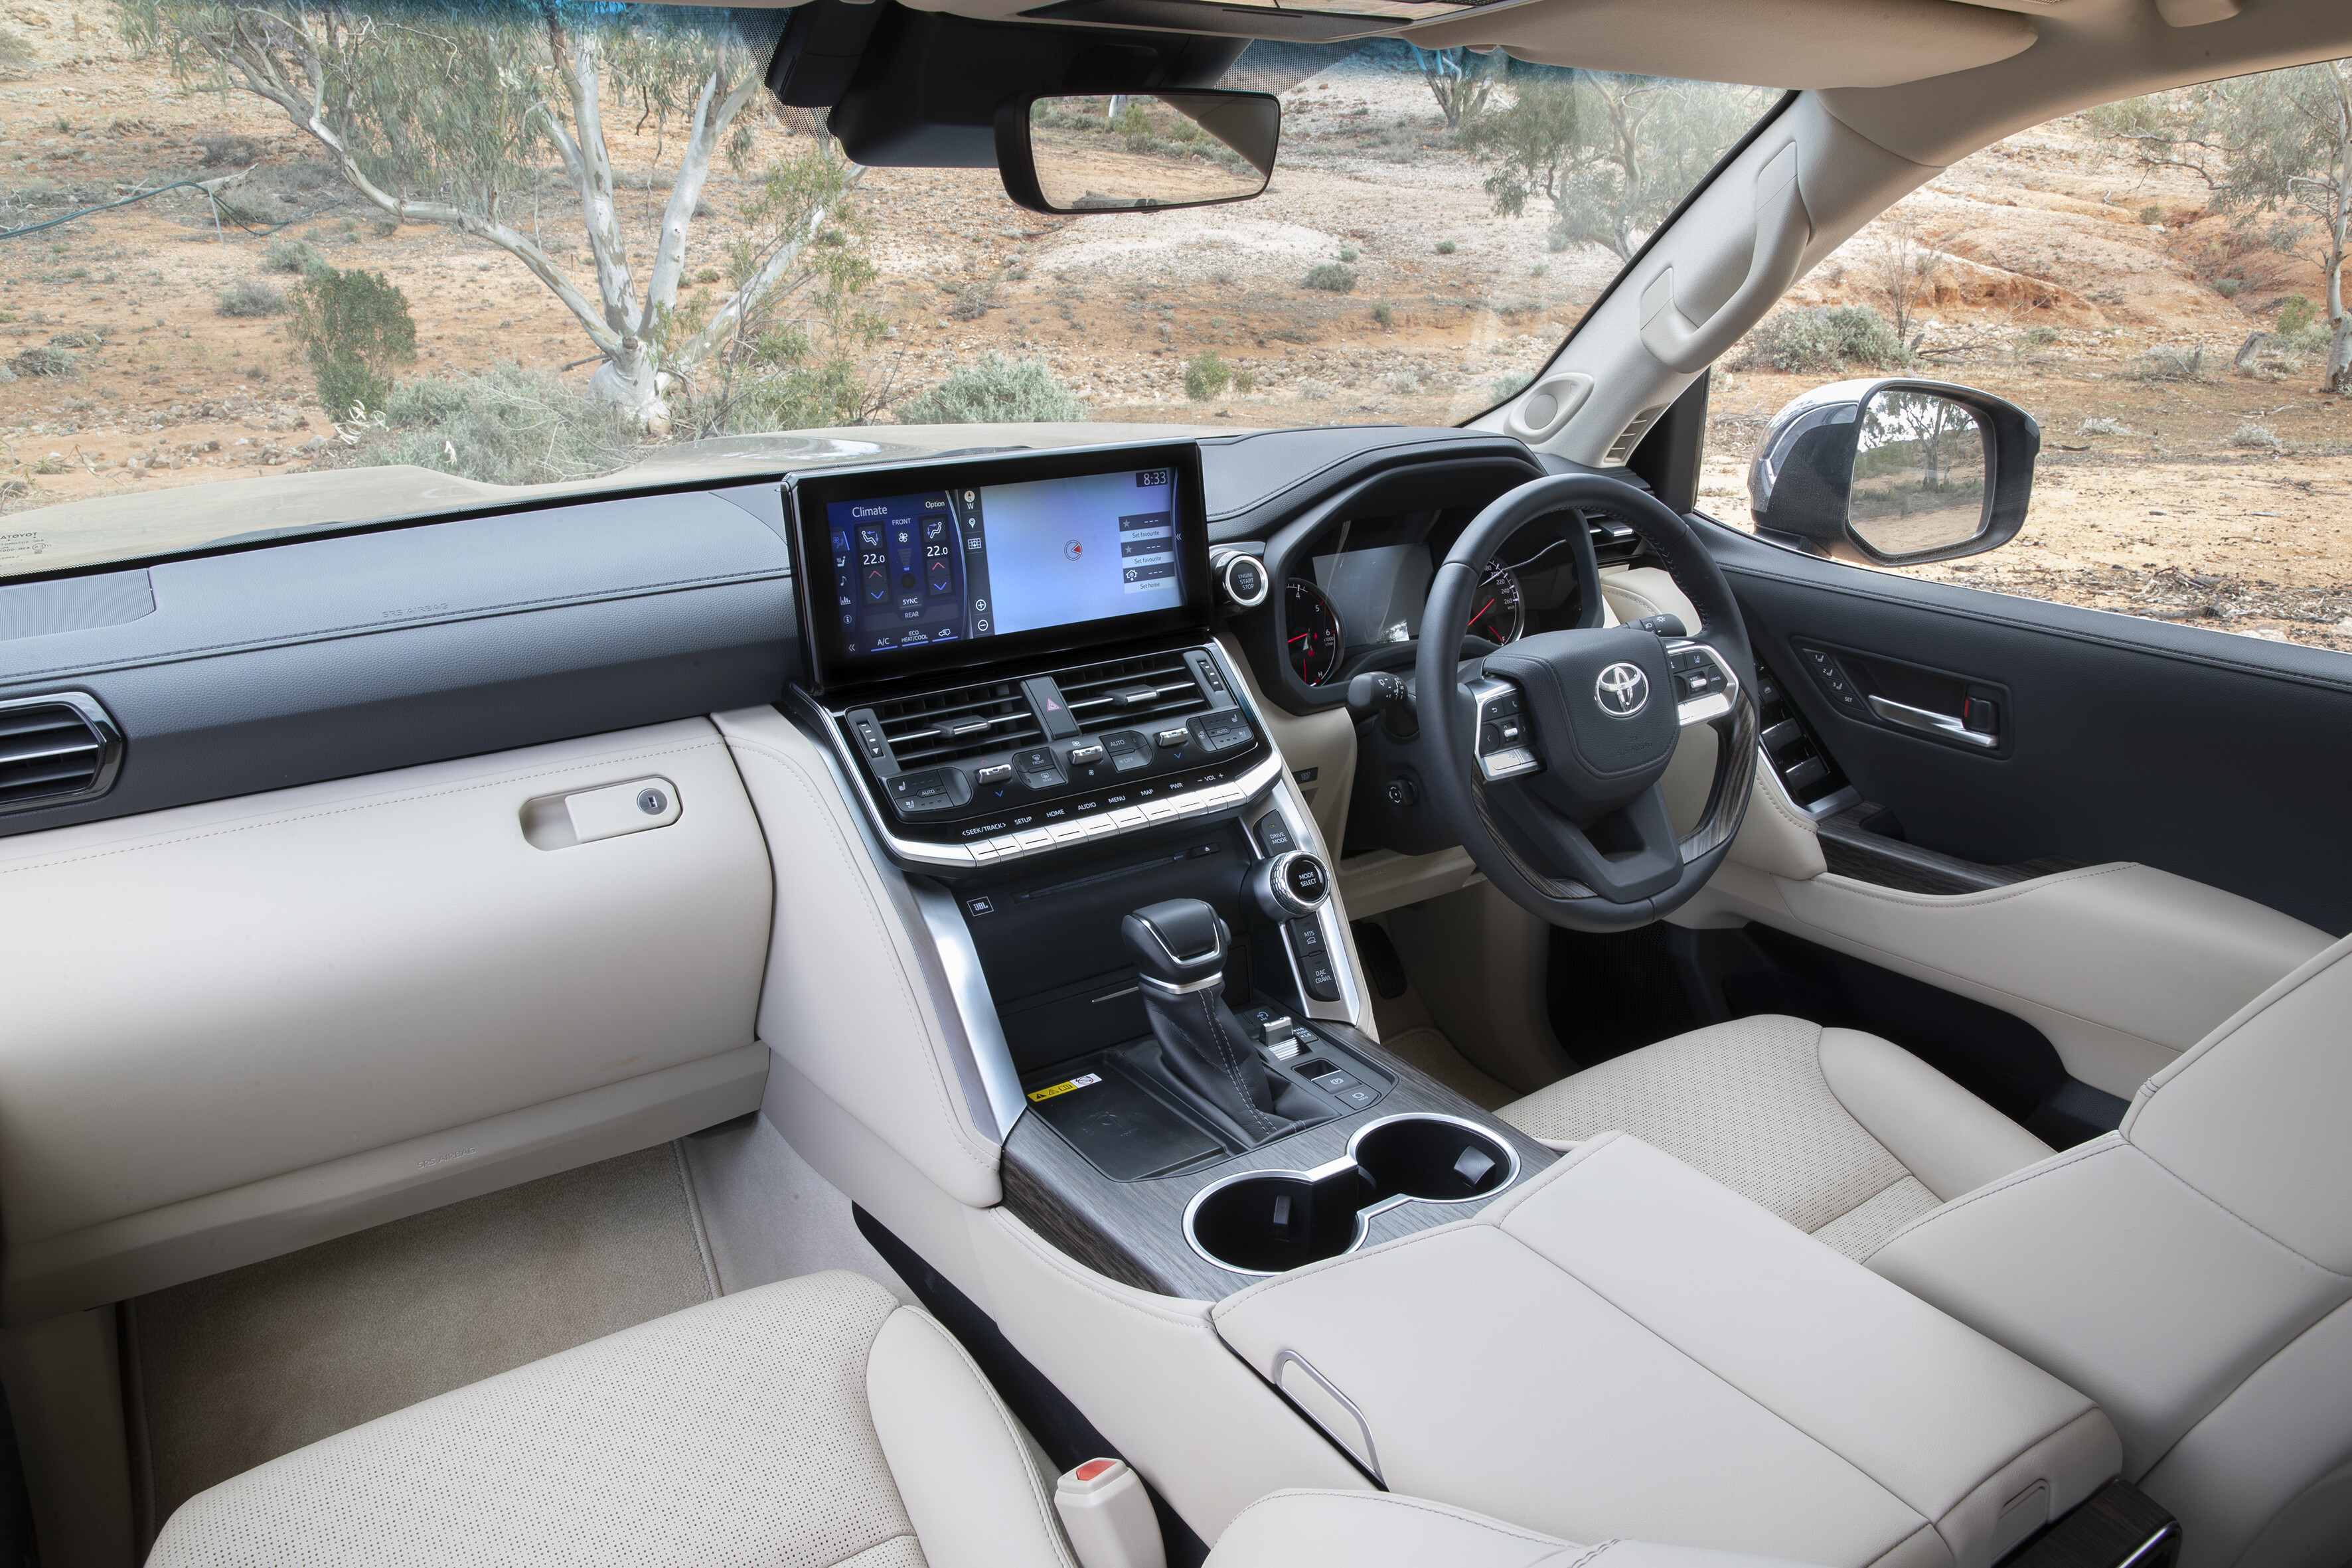 2022 Toyota LandCruiser 300 interior design and features